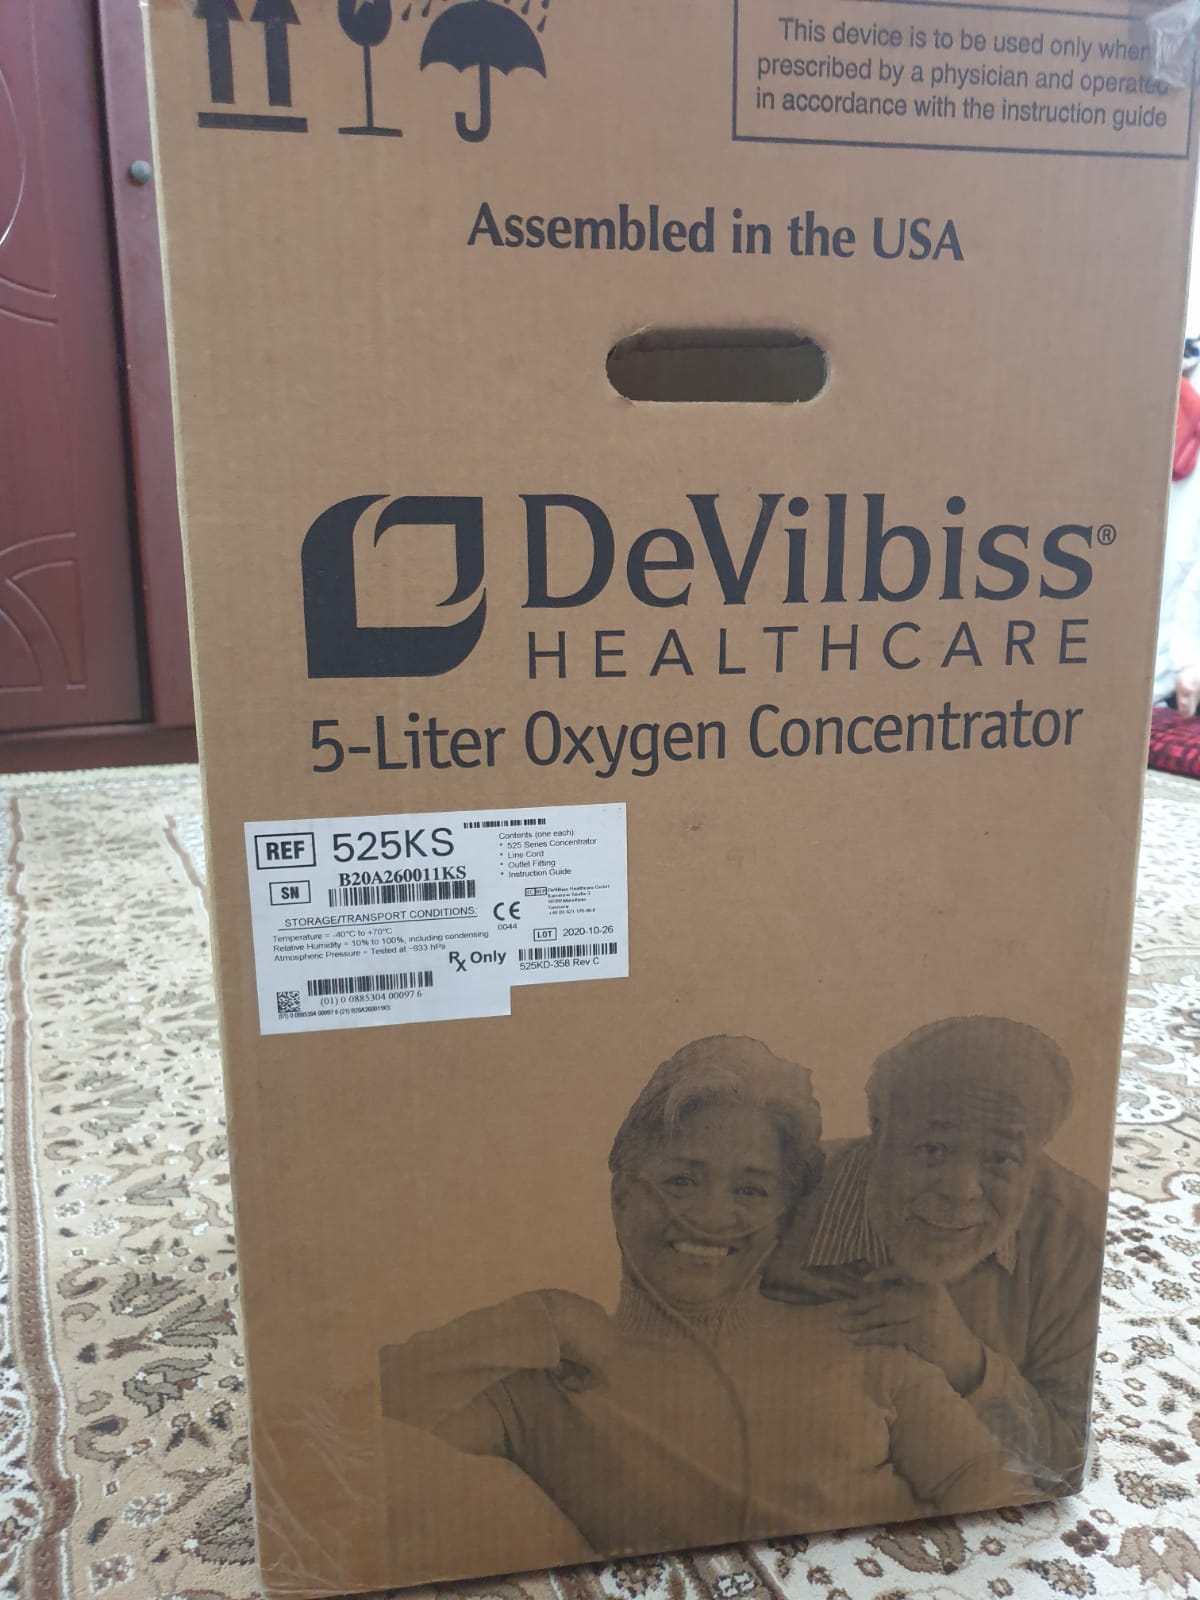 Devilbiss healthcare 5 liter oxygen concentrator USA